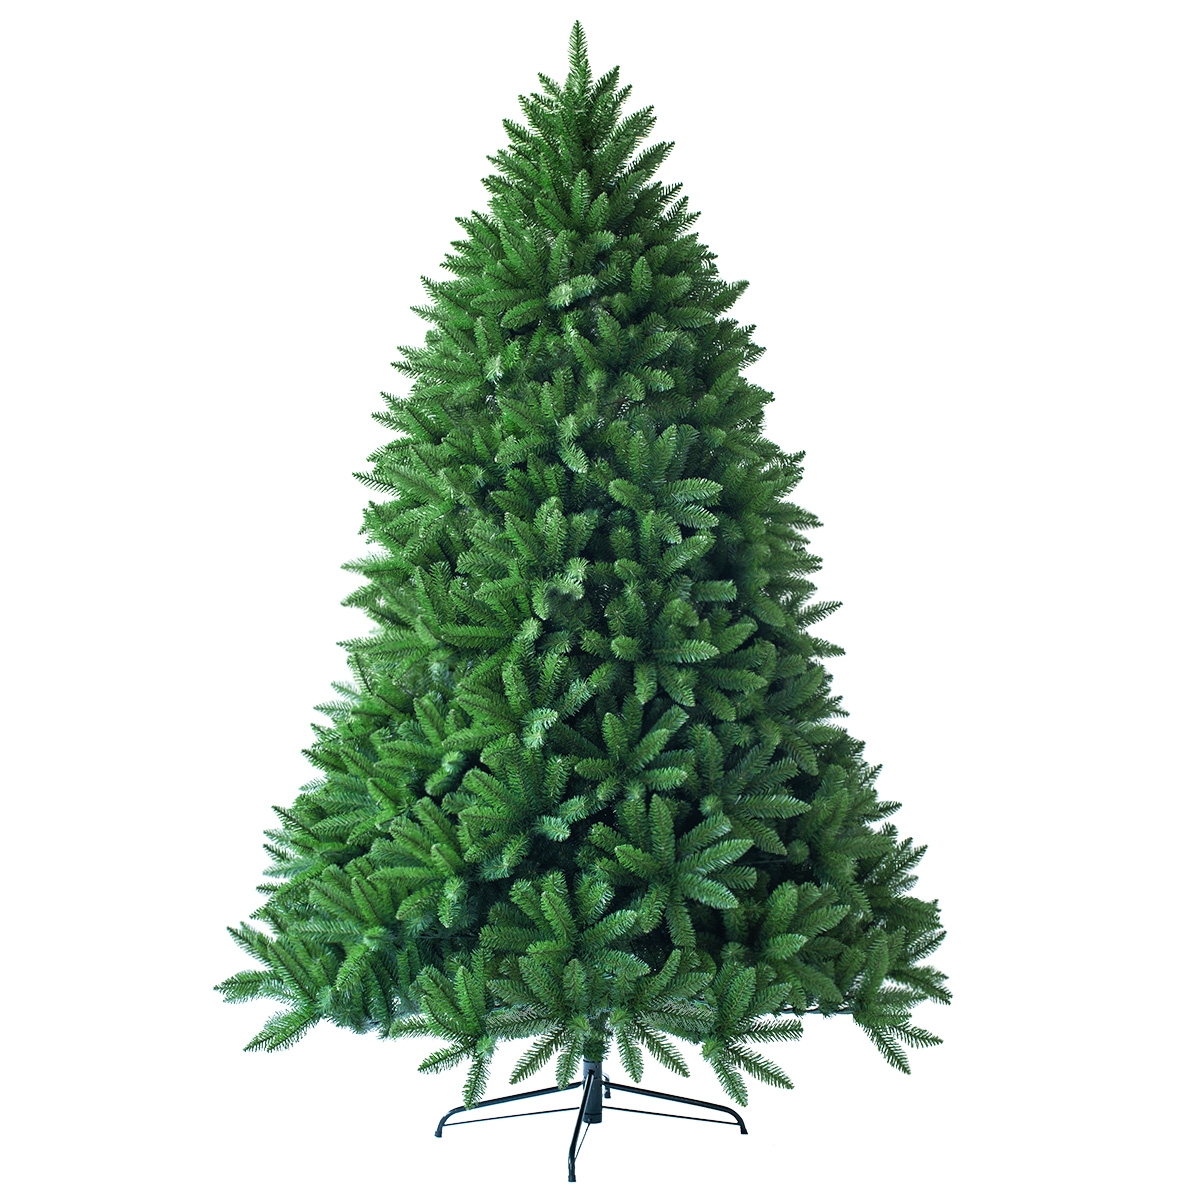 Costway 1,5m Árbol de Navidad No Iluminado con 600 Ramas Abeto Artificial con Base de Metal Resistente Verde